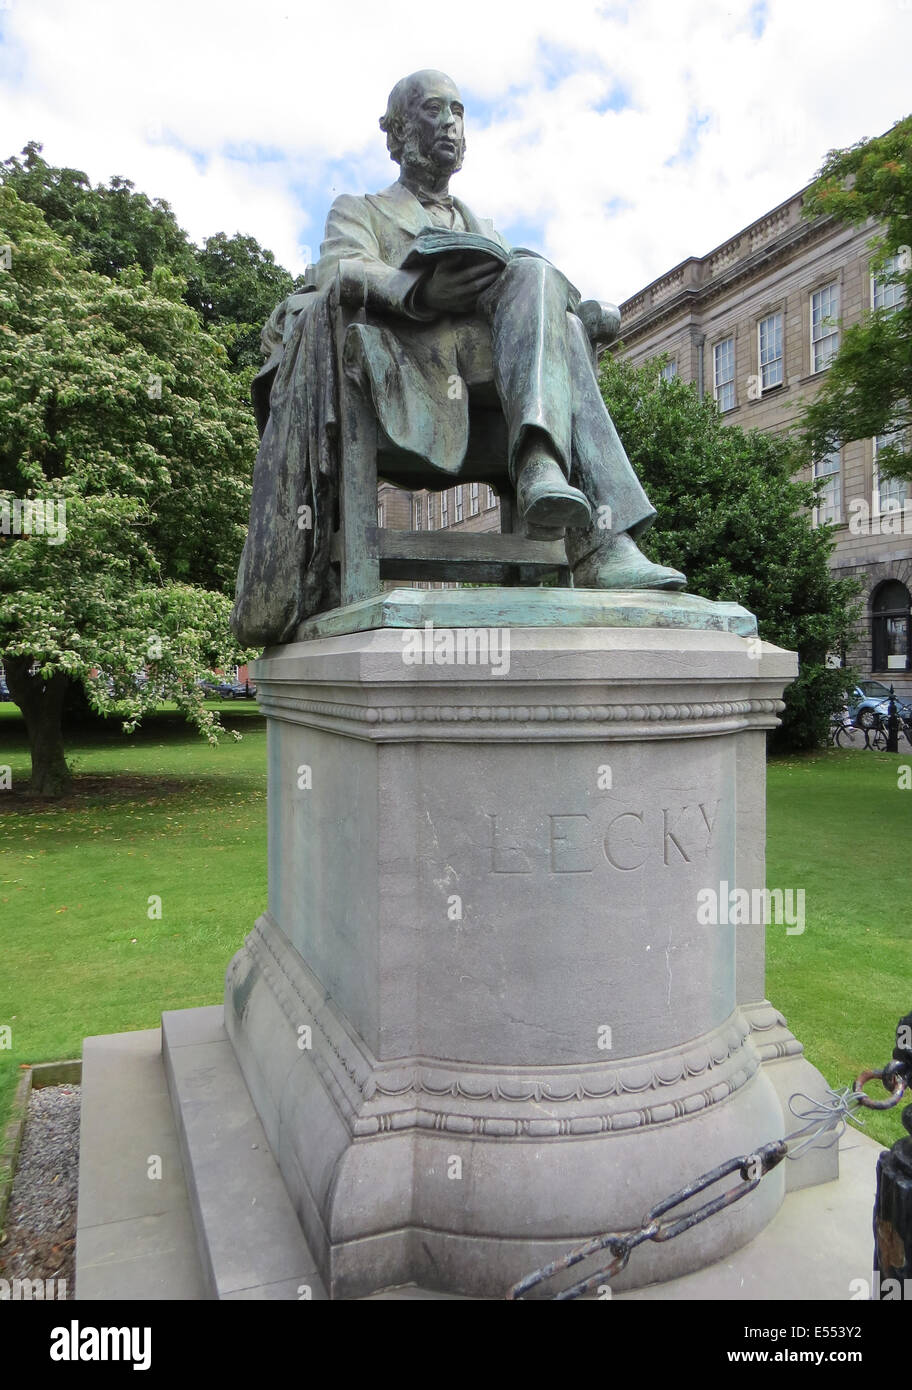 WILLIAM LECKY (1838-1903) die Statue des irischen Historikers auf Gelände des Trinity College in Dublin. Foto Tony Gale Stockfoto